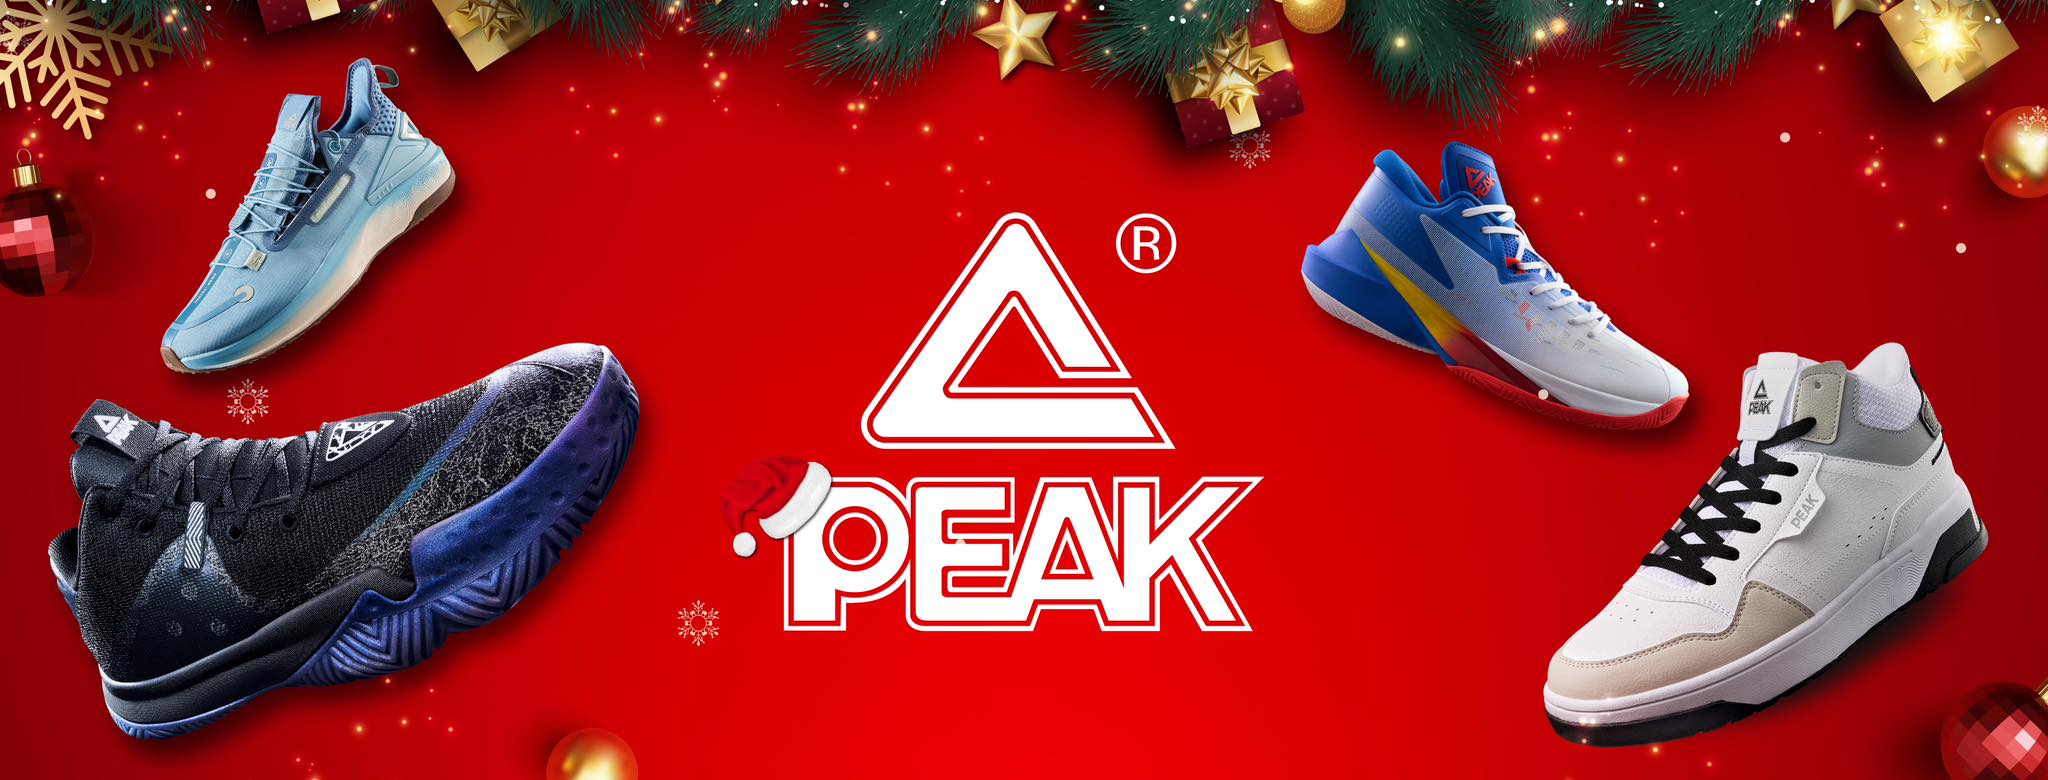 Copy of Peak Sport Shopee Là 1 Trong Những Thương Hiệu Hàng Đầu Trong Lĩnh Vực Sản Xuất Giày Bóng Rổ Nổi Tiếng Trên Toàn Cầu